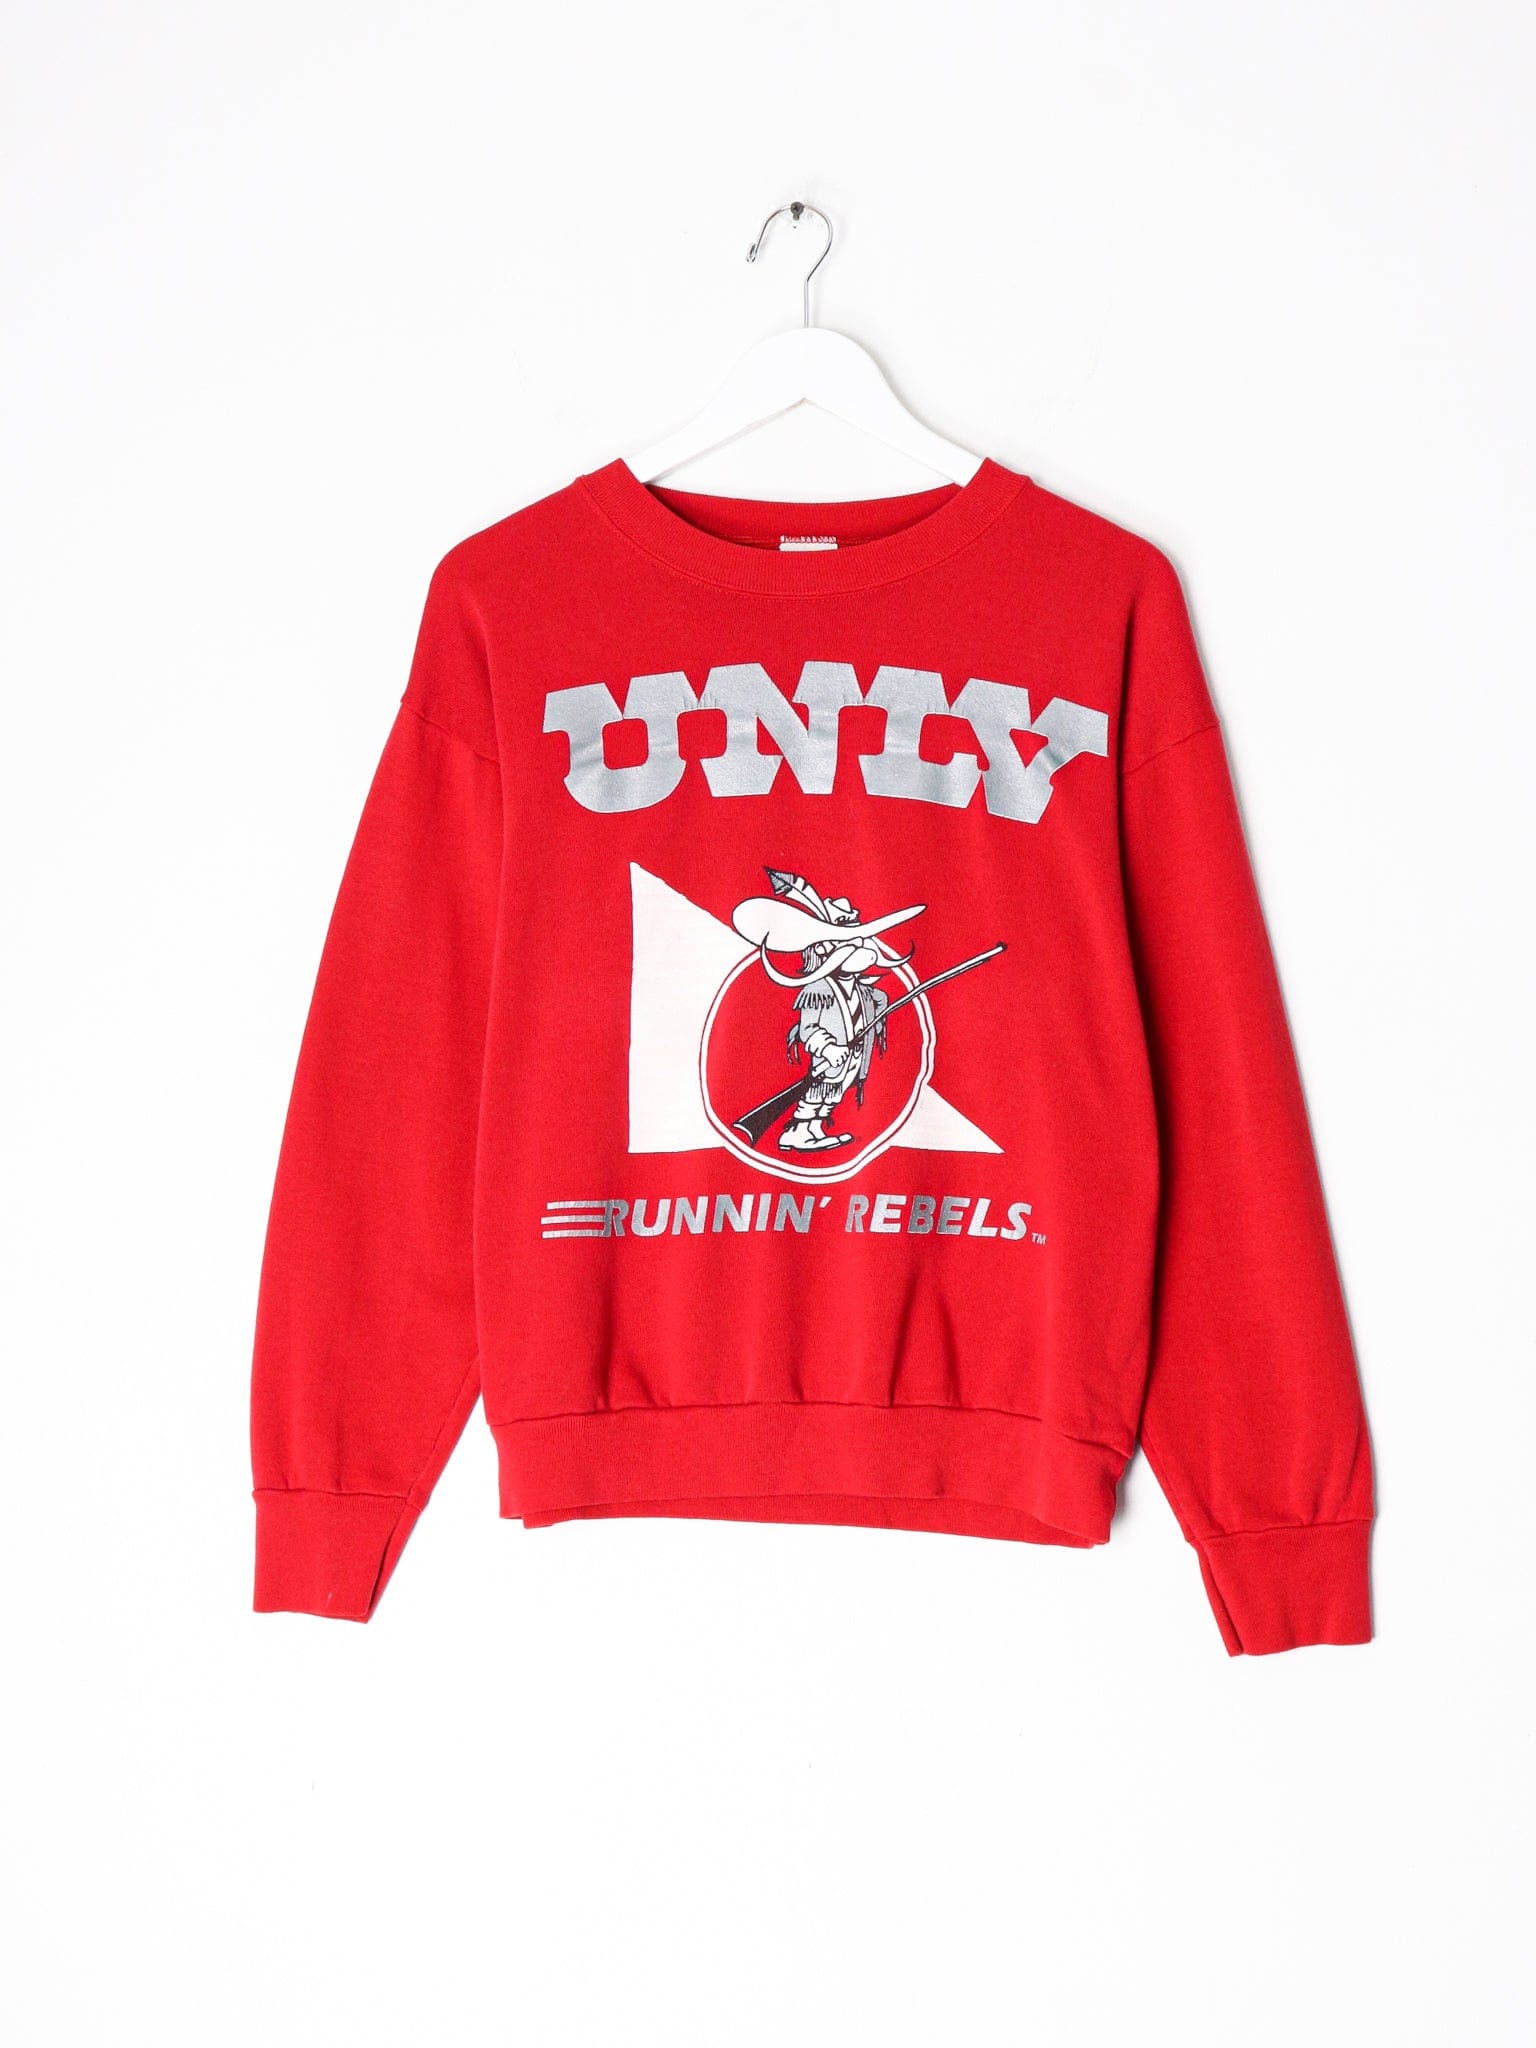 Collegiate Sweatshirts & Hoodies Vintage University Of Las Vegas Runnin Rebels Sweatshirt Size M Fits Small